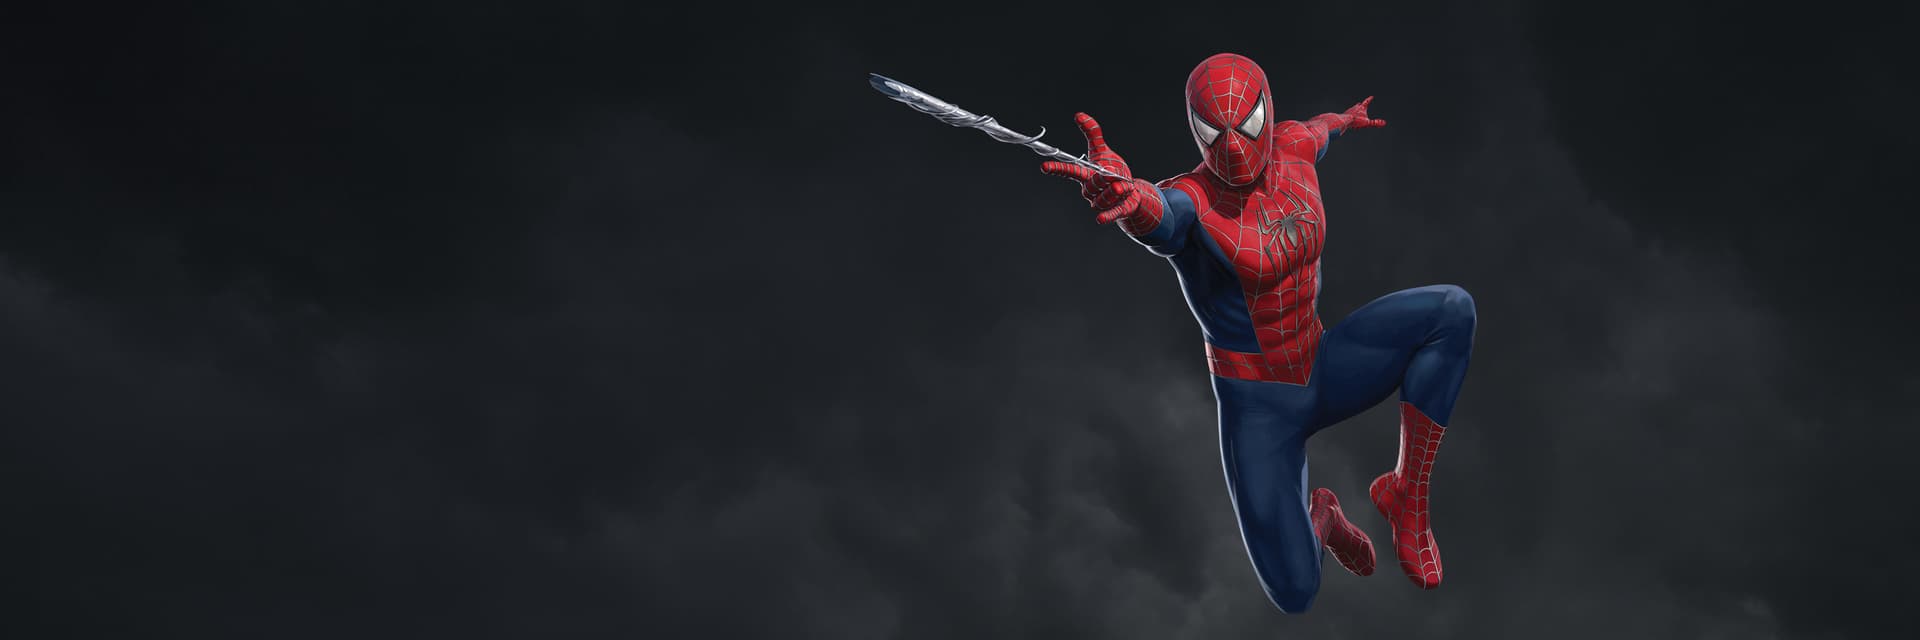 Friendly Neighborhood Spider-Man (Peter Parker) Spider-Man 2